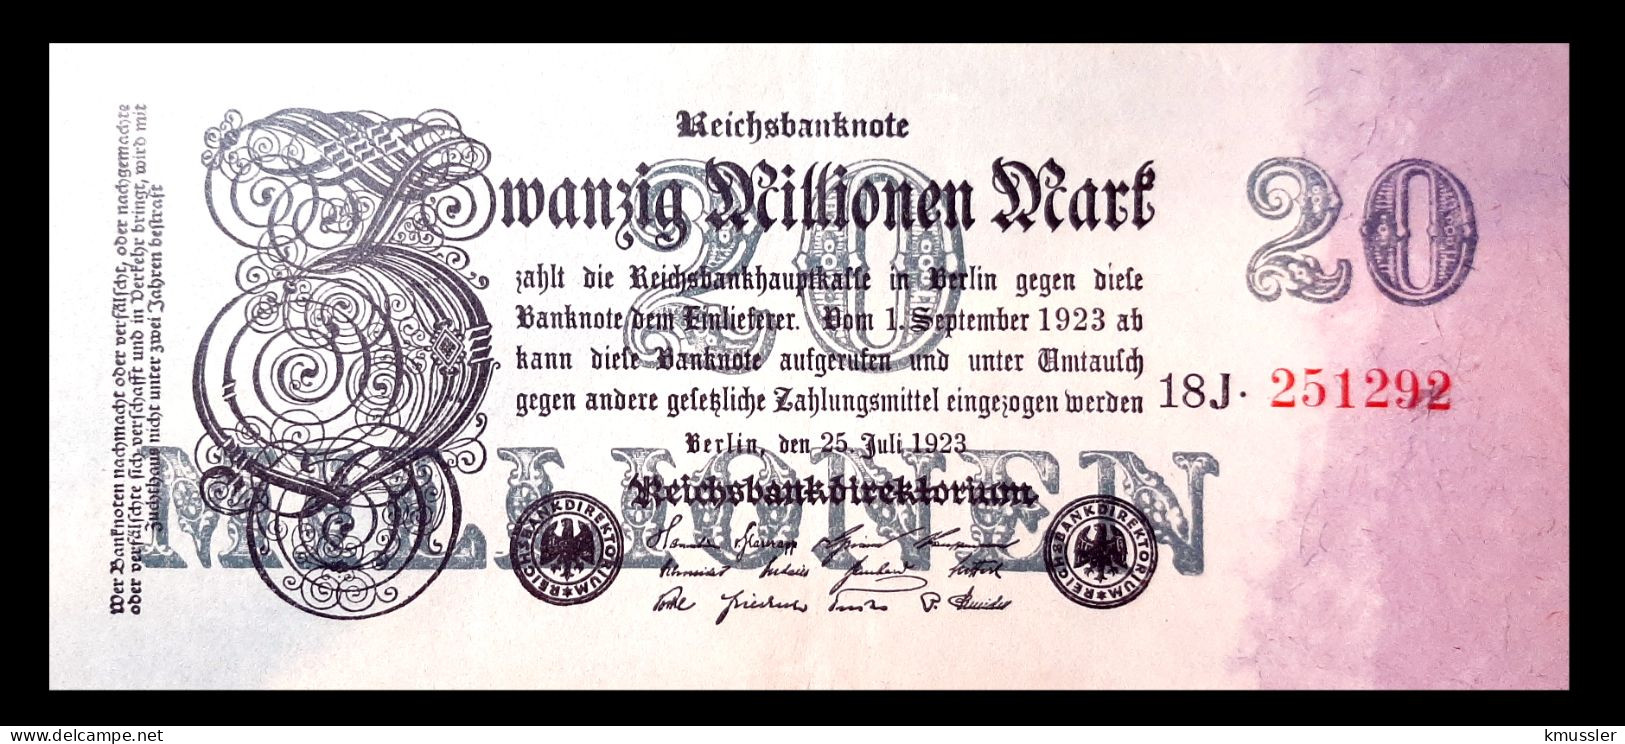 # # # Banknote Deutsches Reich (Germany) 20.000 Mark 1923 # # # - 20 Miljoen Mark